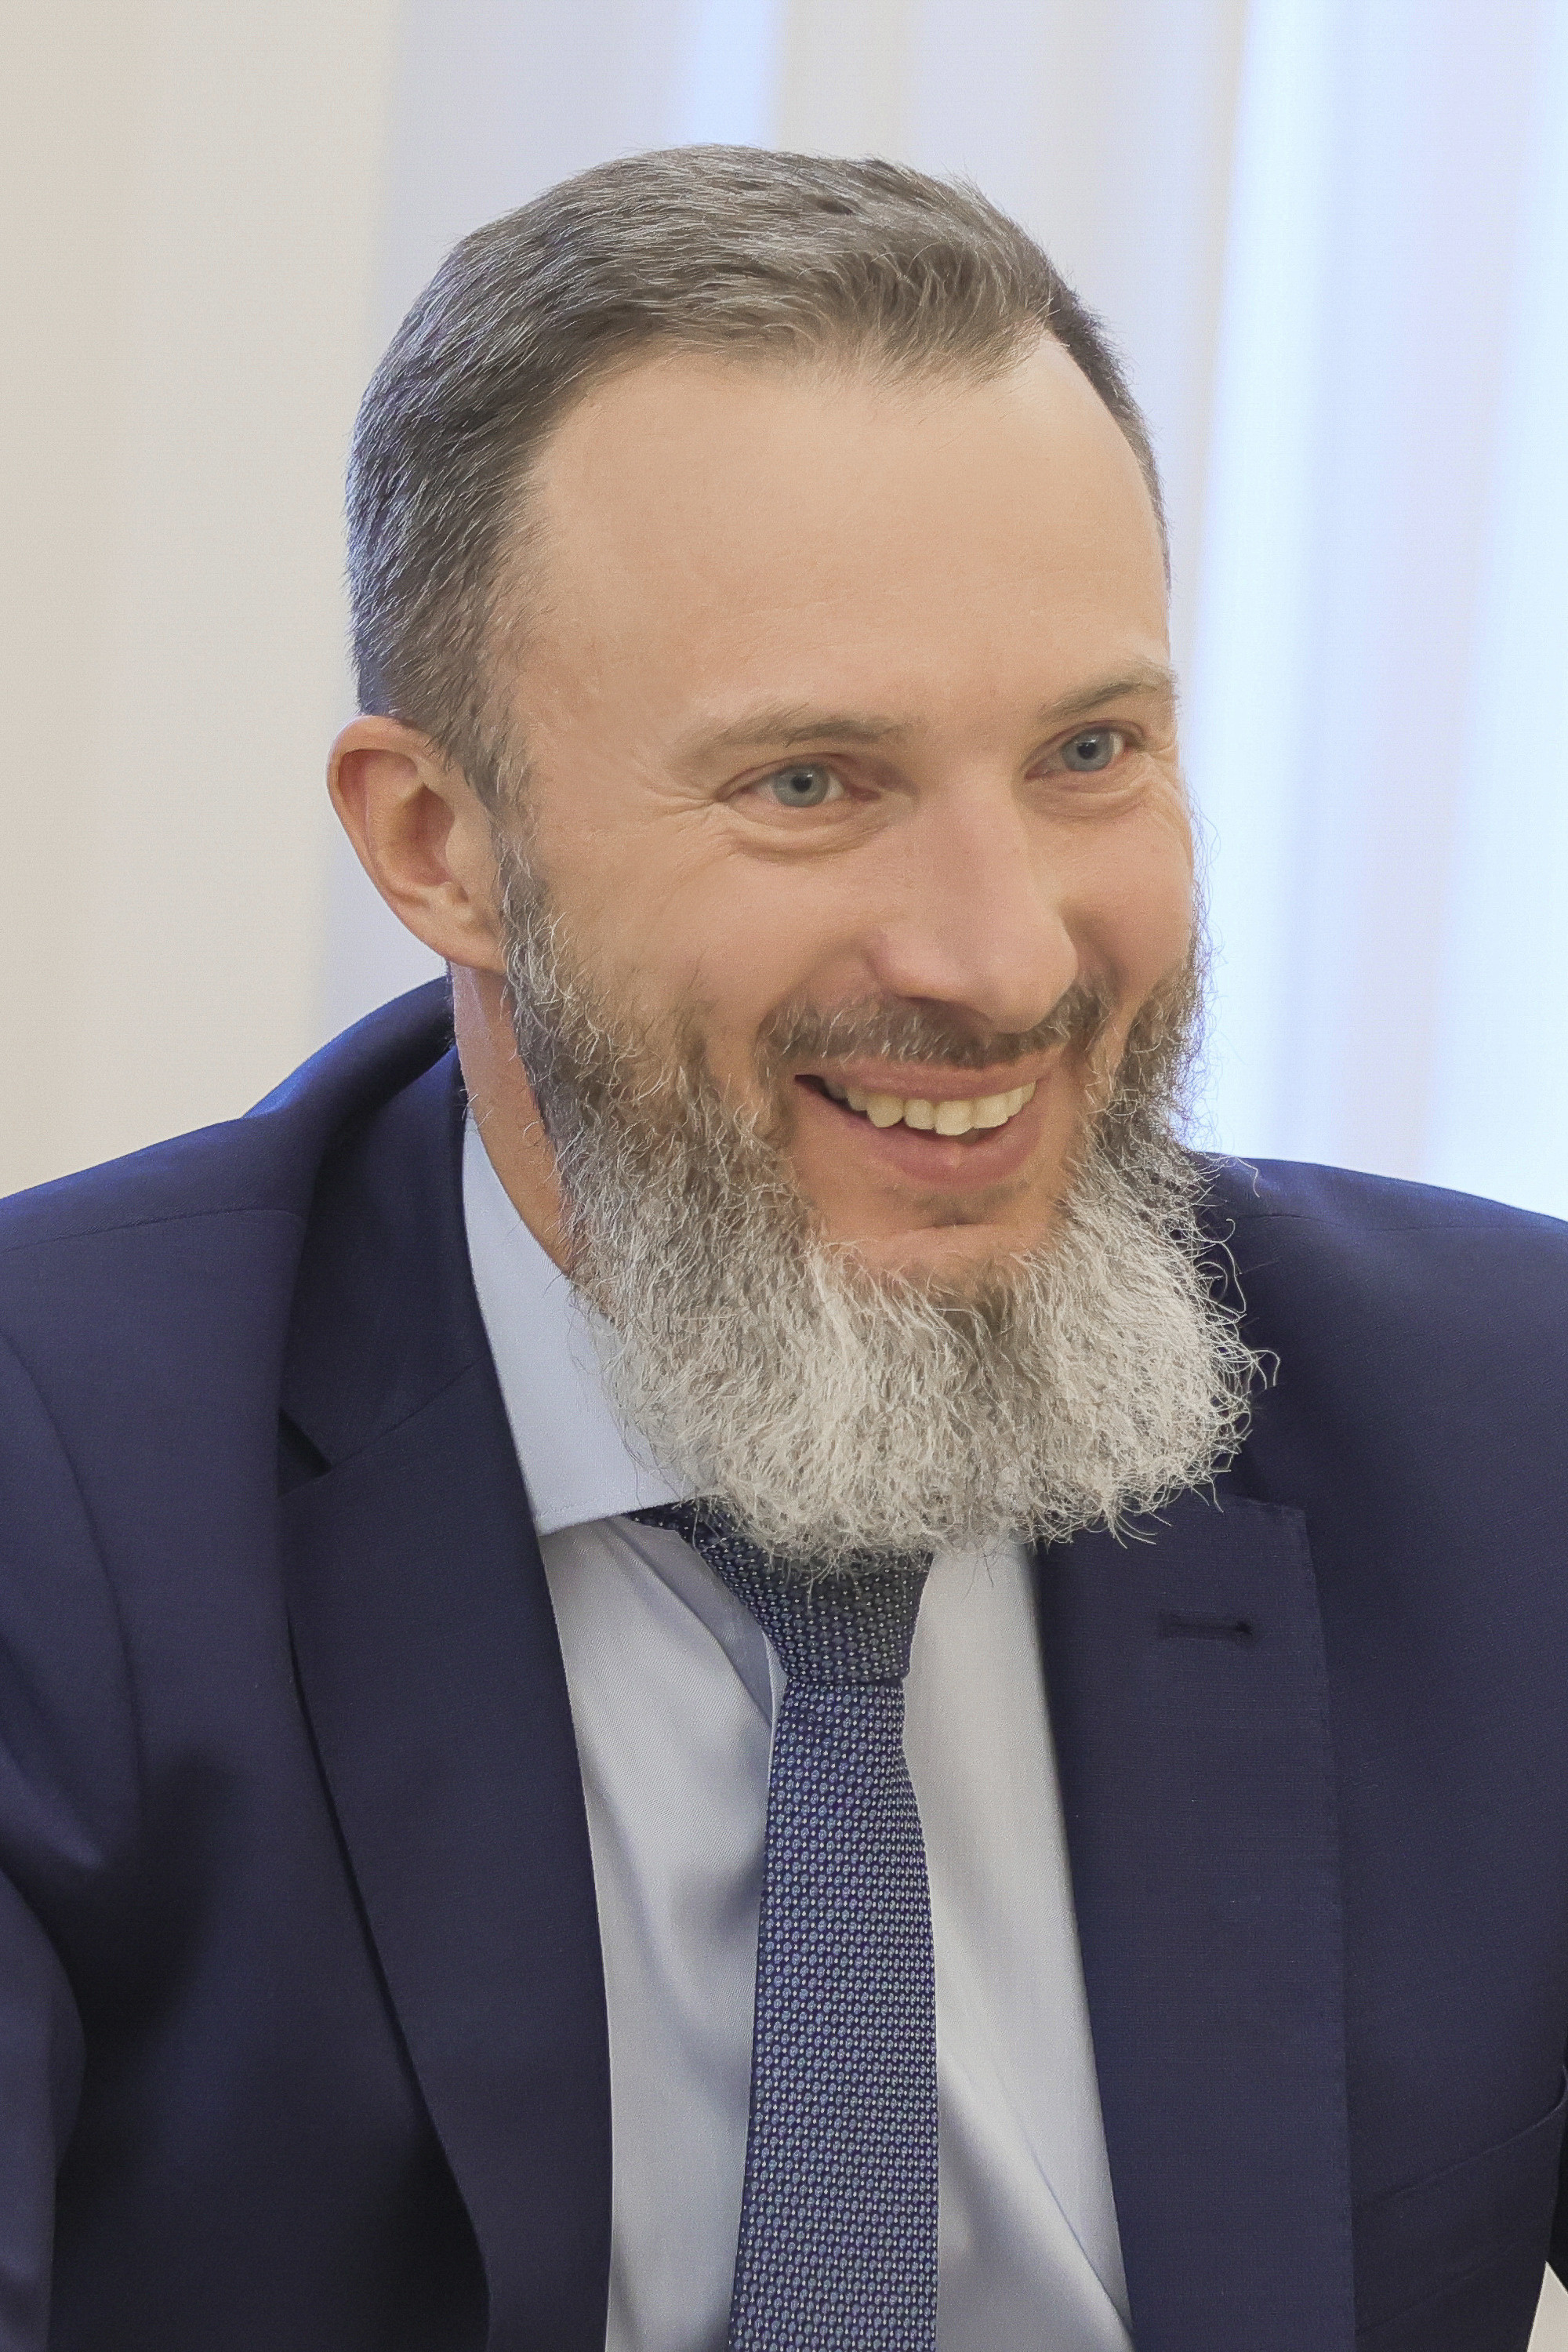 По мнению политического аналитика, Сергей Пономаренко продолжит возглавлять администрацию губернатора вплоть до президентских выборов, которые будут в марте 2024 года